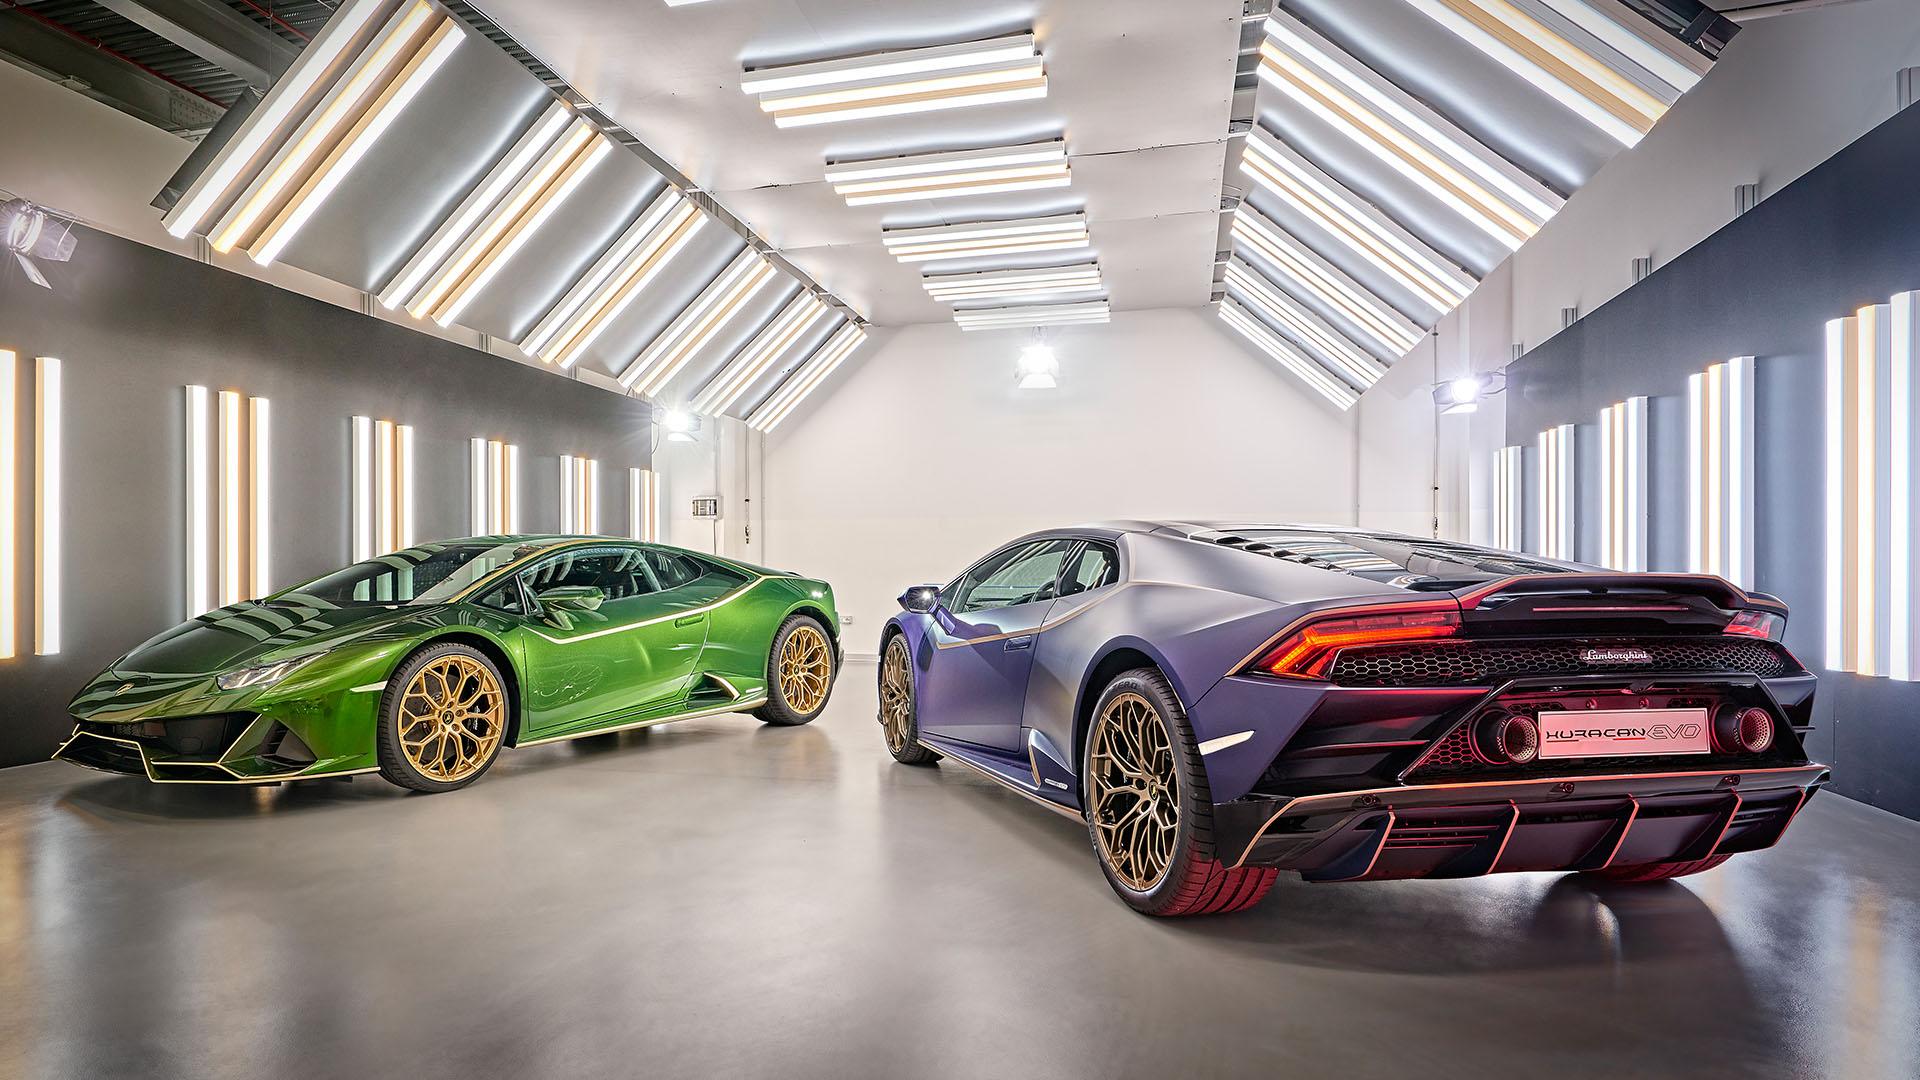 Lamborghini Pictures (200k+ Images)